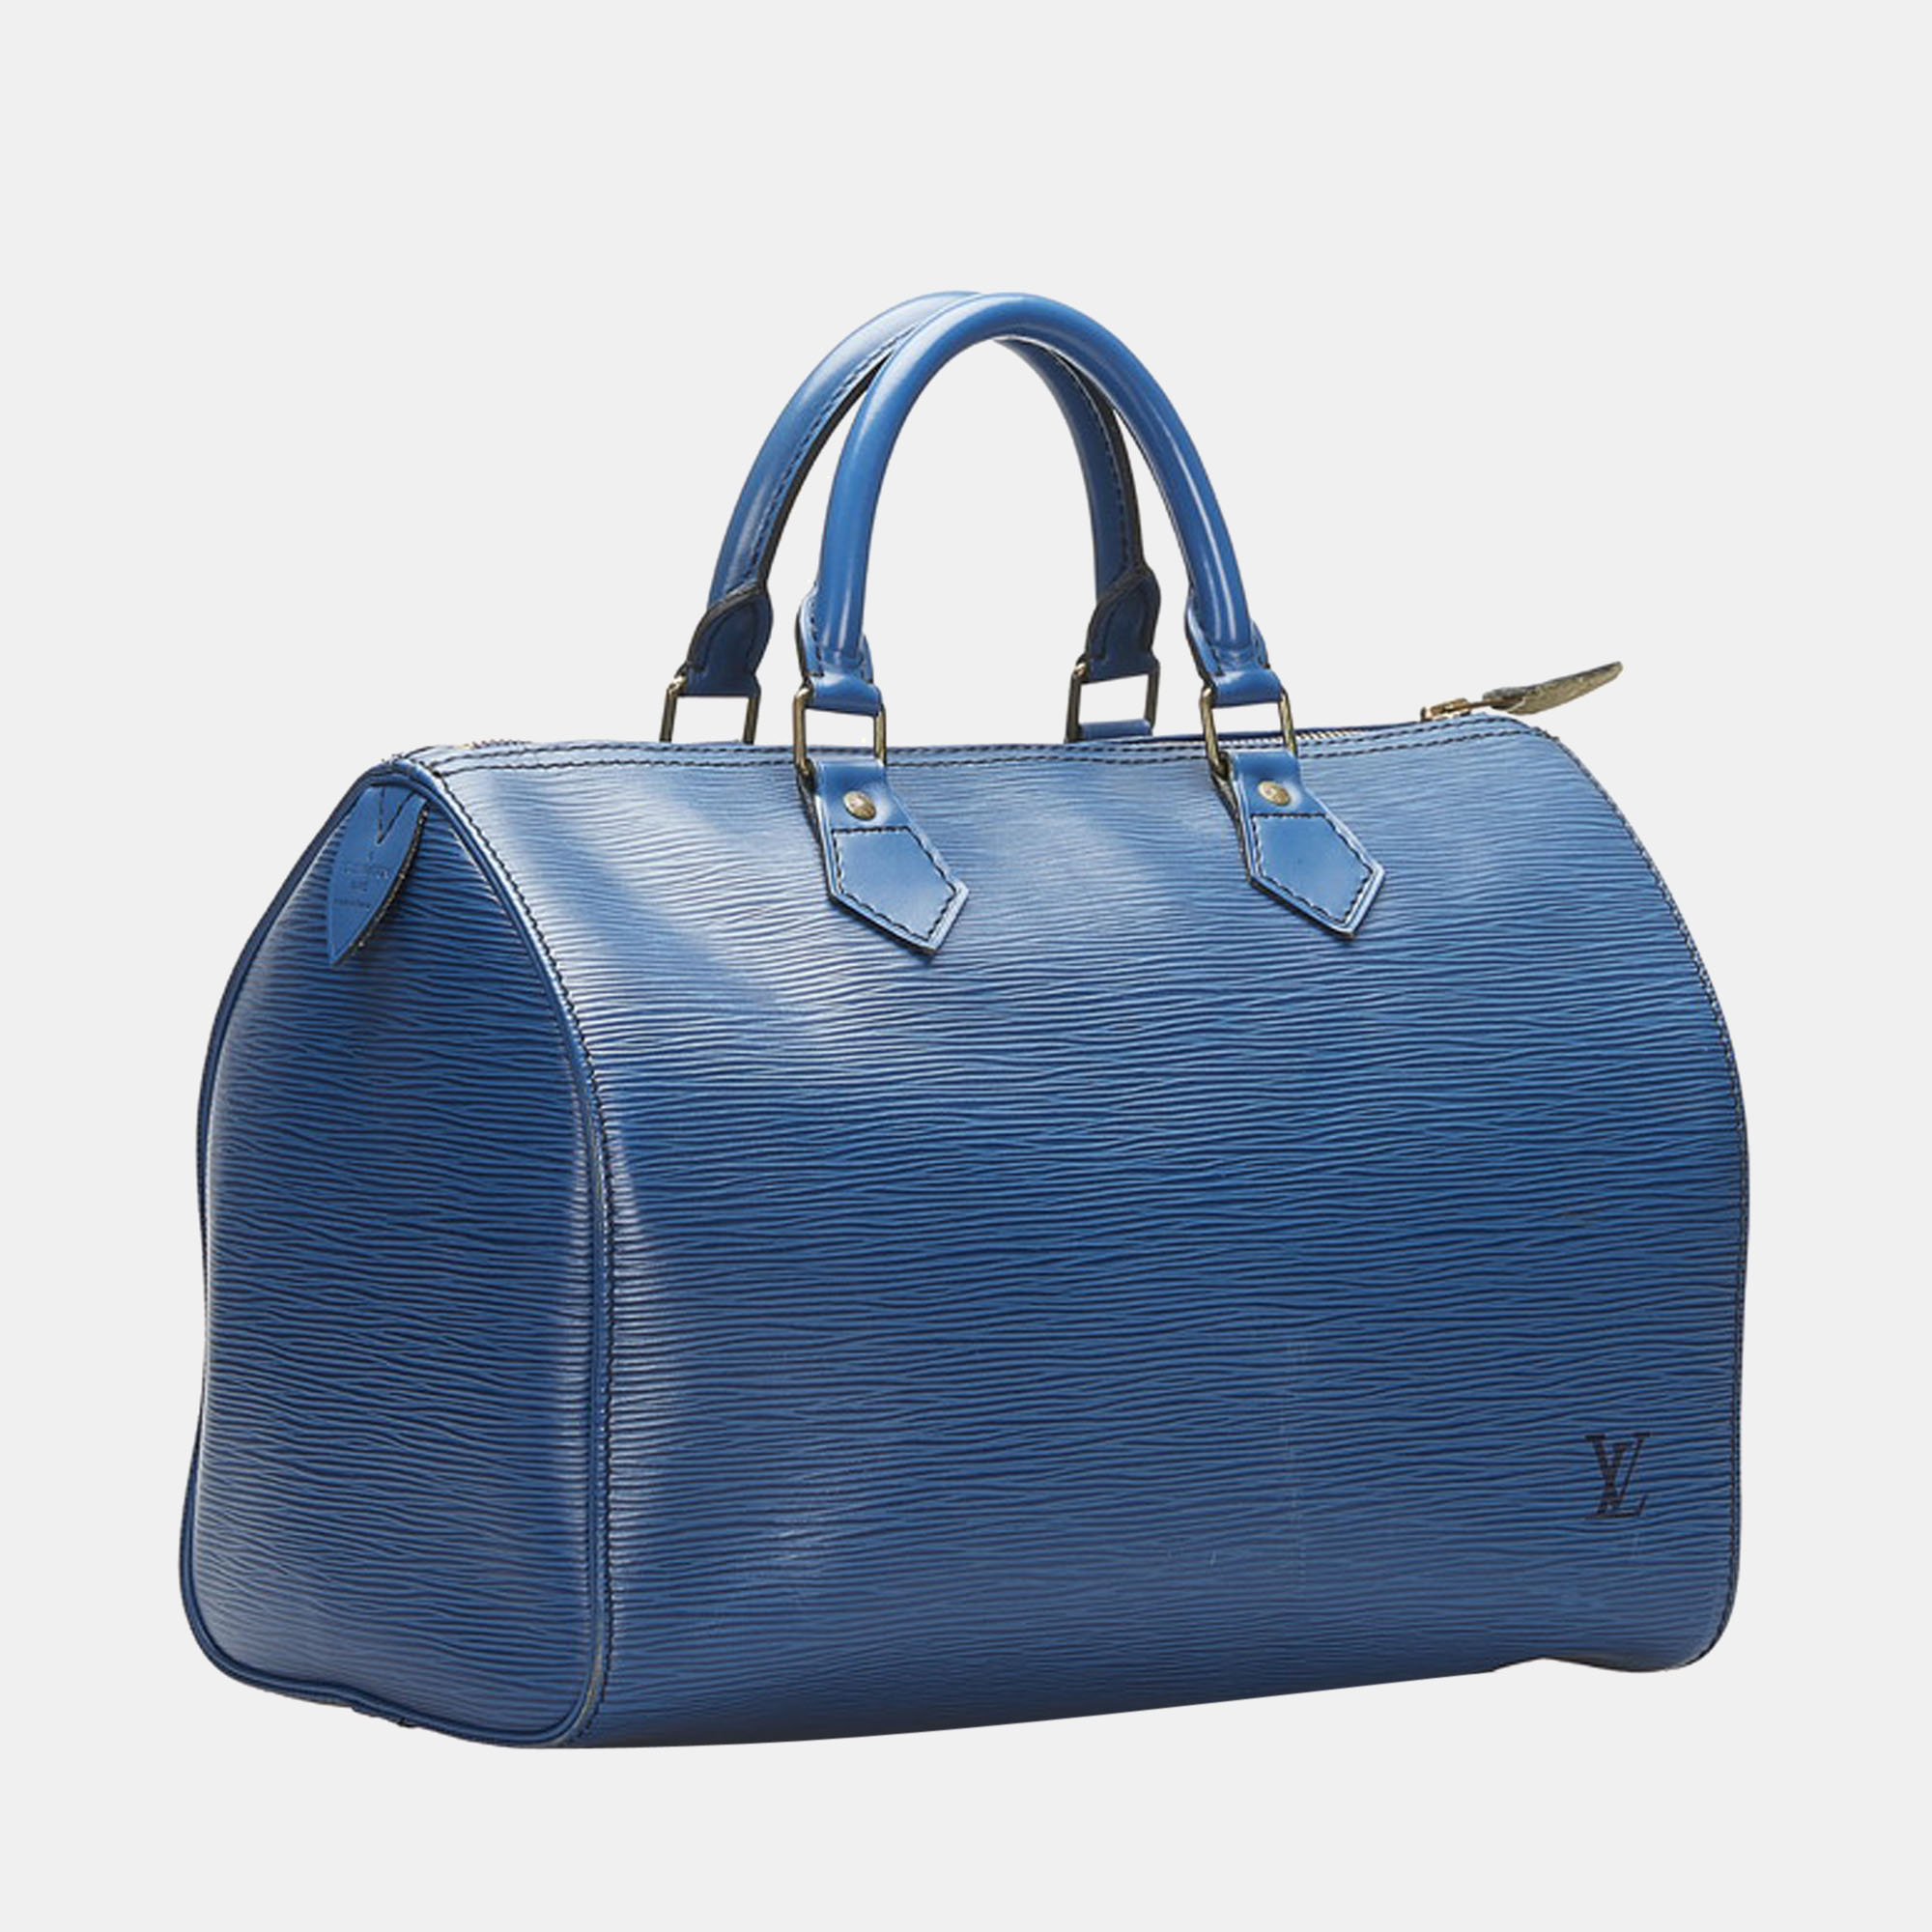 

Louis Vuitton Blue Epi Leather Speedy 30 Bag